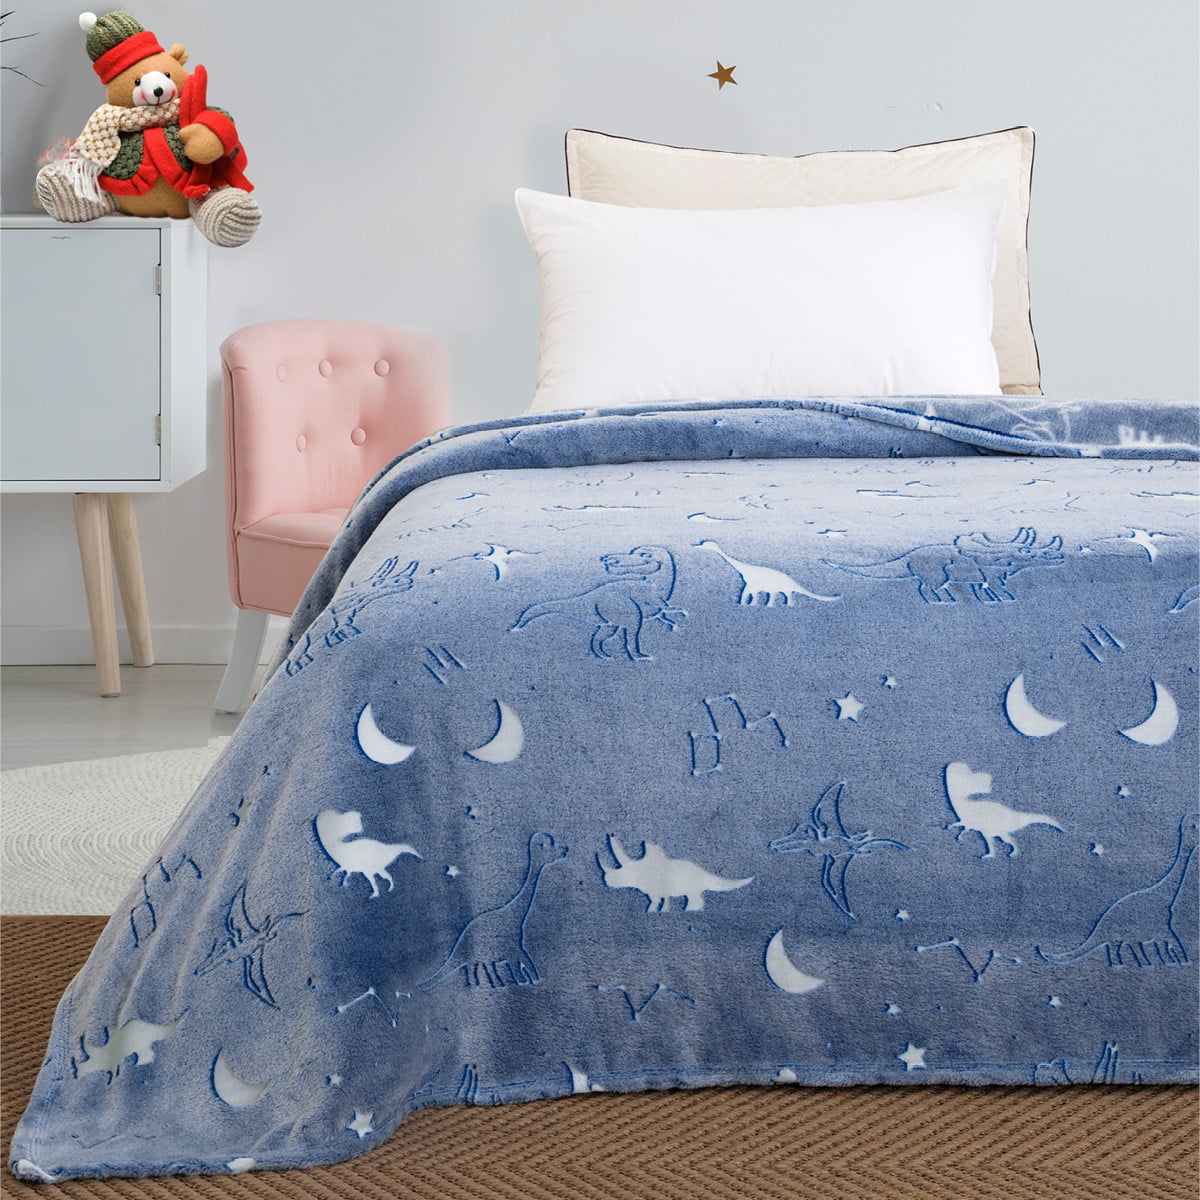 Κουβέρτα μονή φωσφορίζουσα Art 6128  160×220 Γαλάζιο Beauty Home